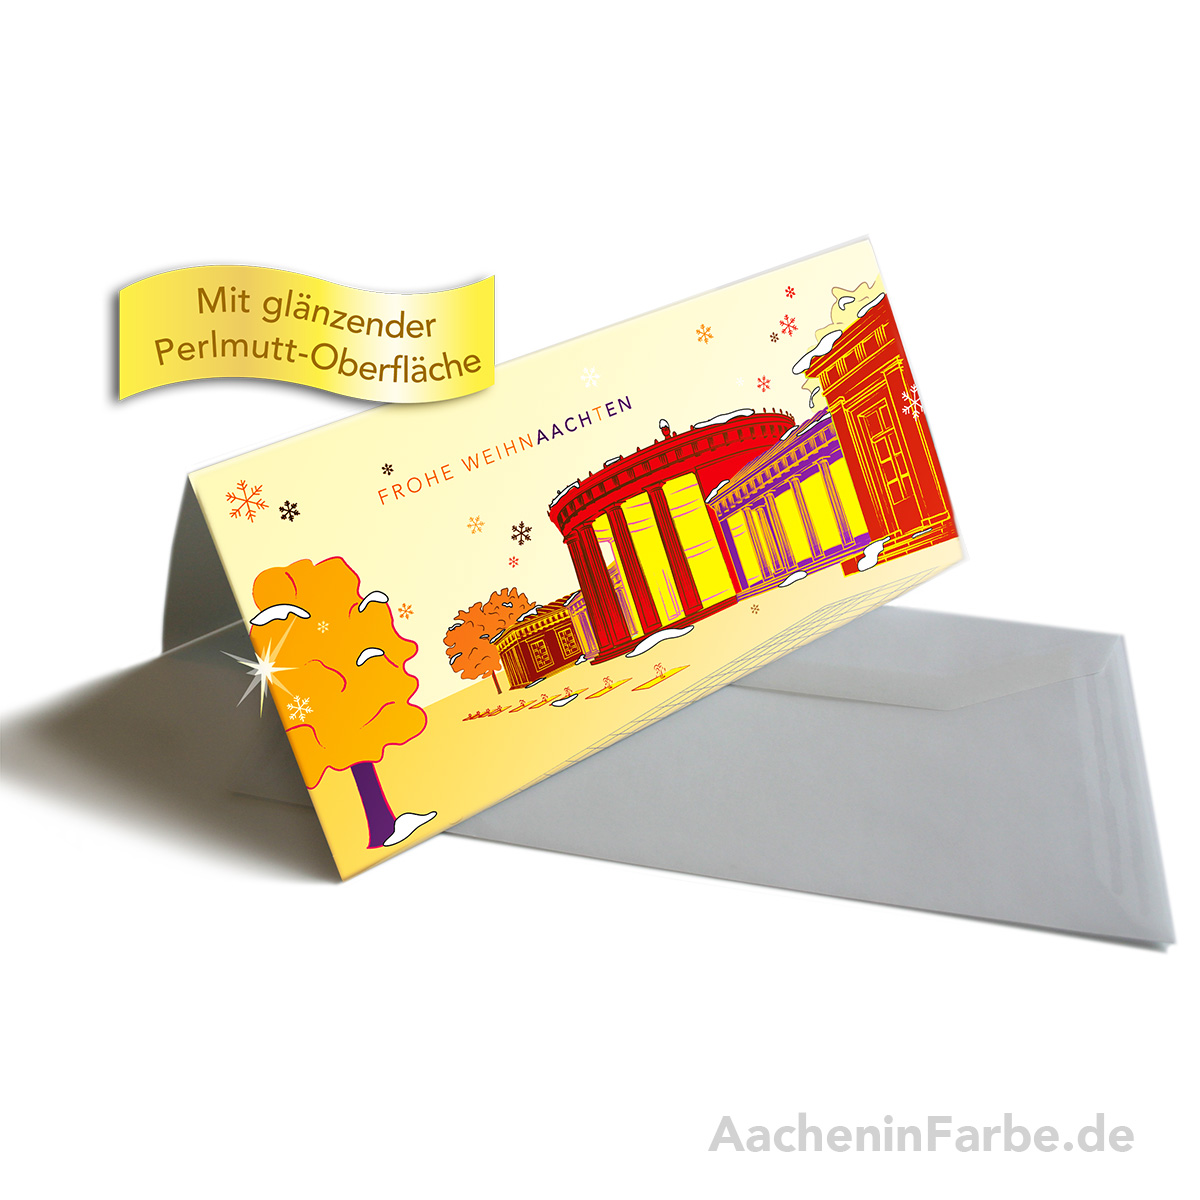 Grußkarte "Frohe WeihnAACHtEN", Elisenbrunnen, orange (Perlmutt)